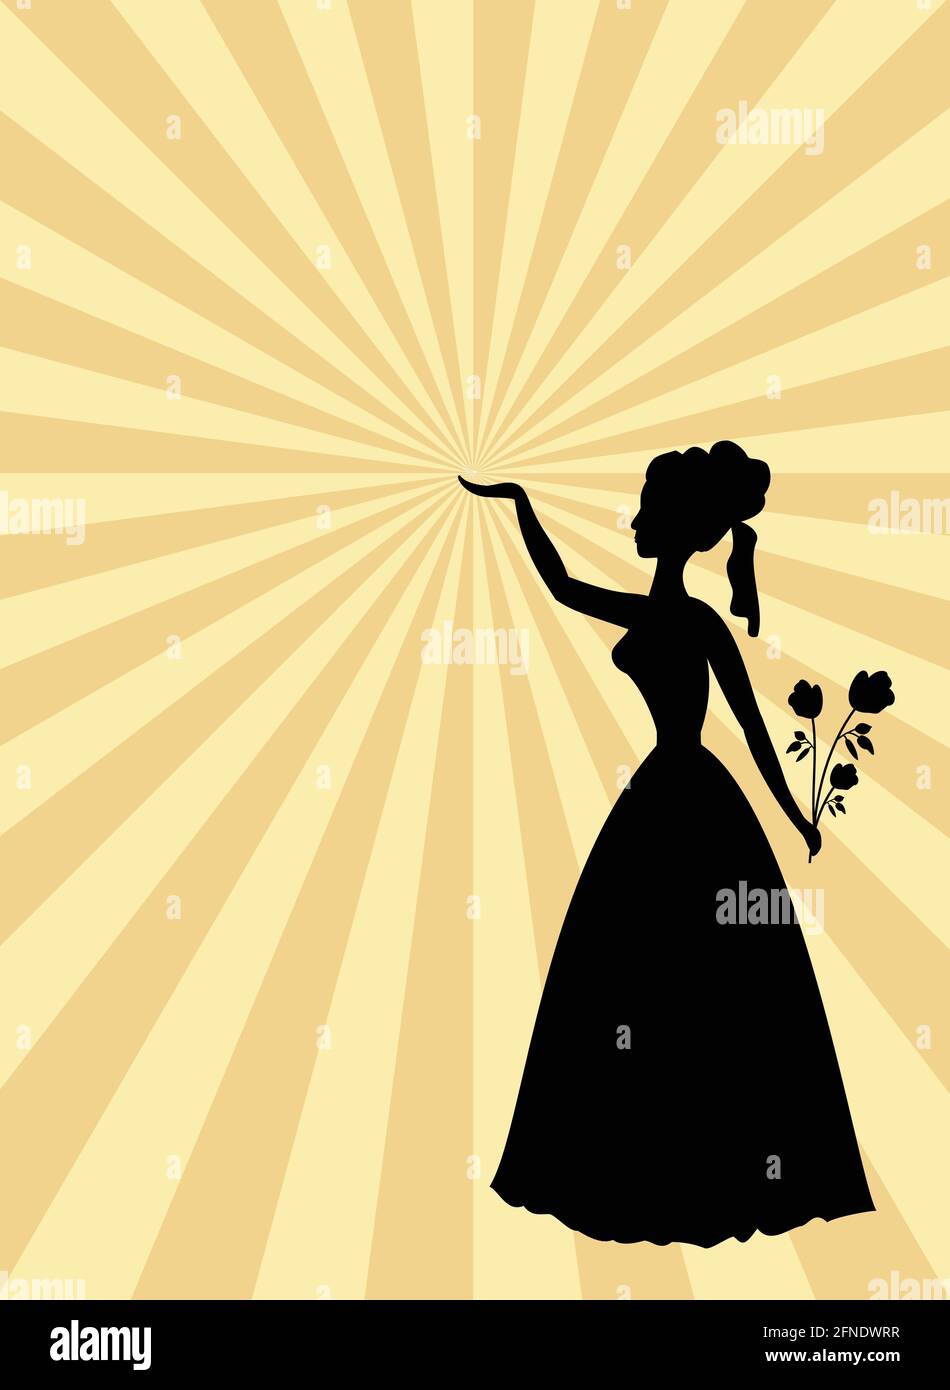 Femme silhouette noire sur fond beige et rayons d'or. Dame avec bouquet de roses et main levée. Modèle dans l'ancien style pour la fête ou le ballon i Illustration de Vecteur